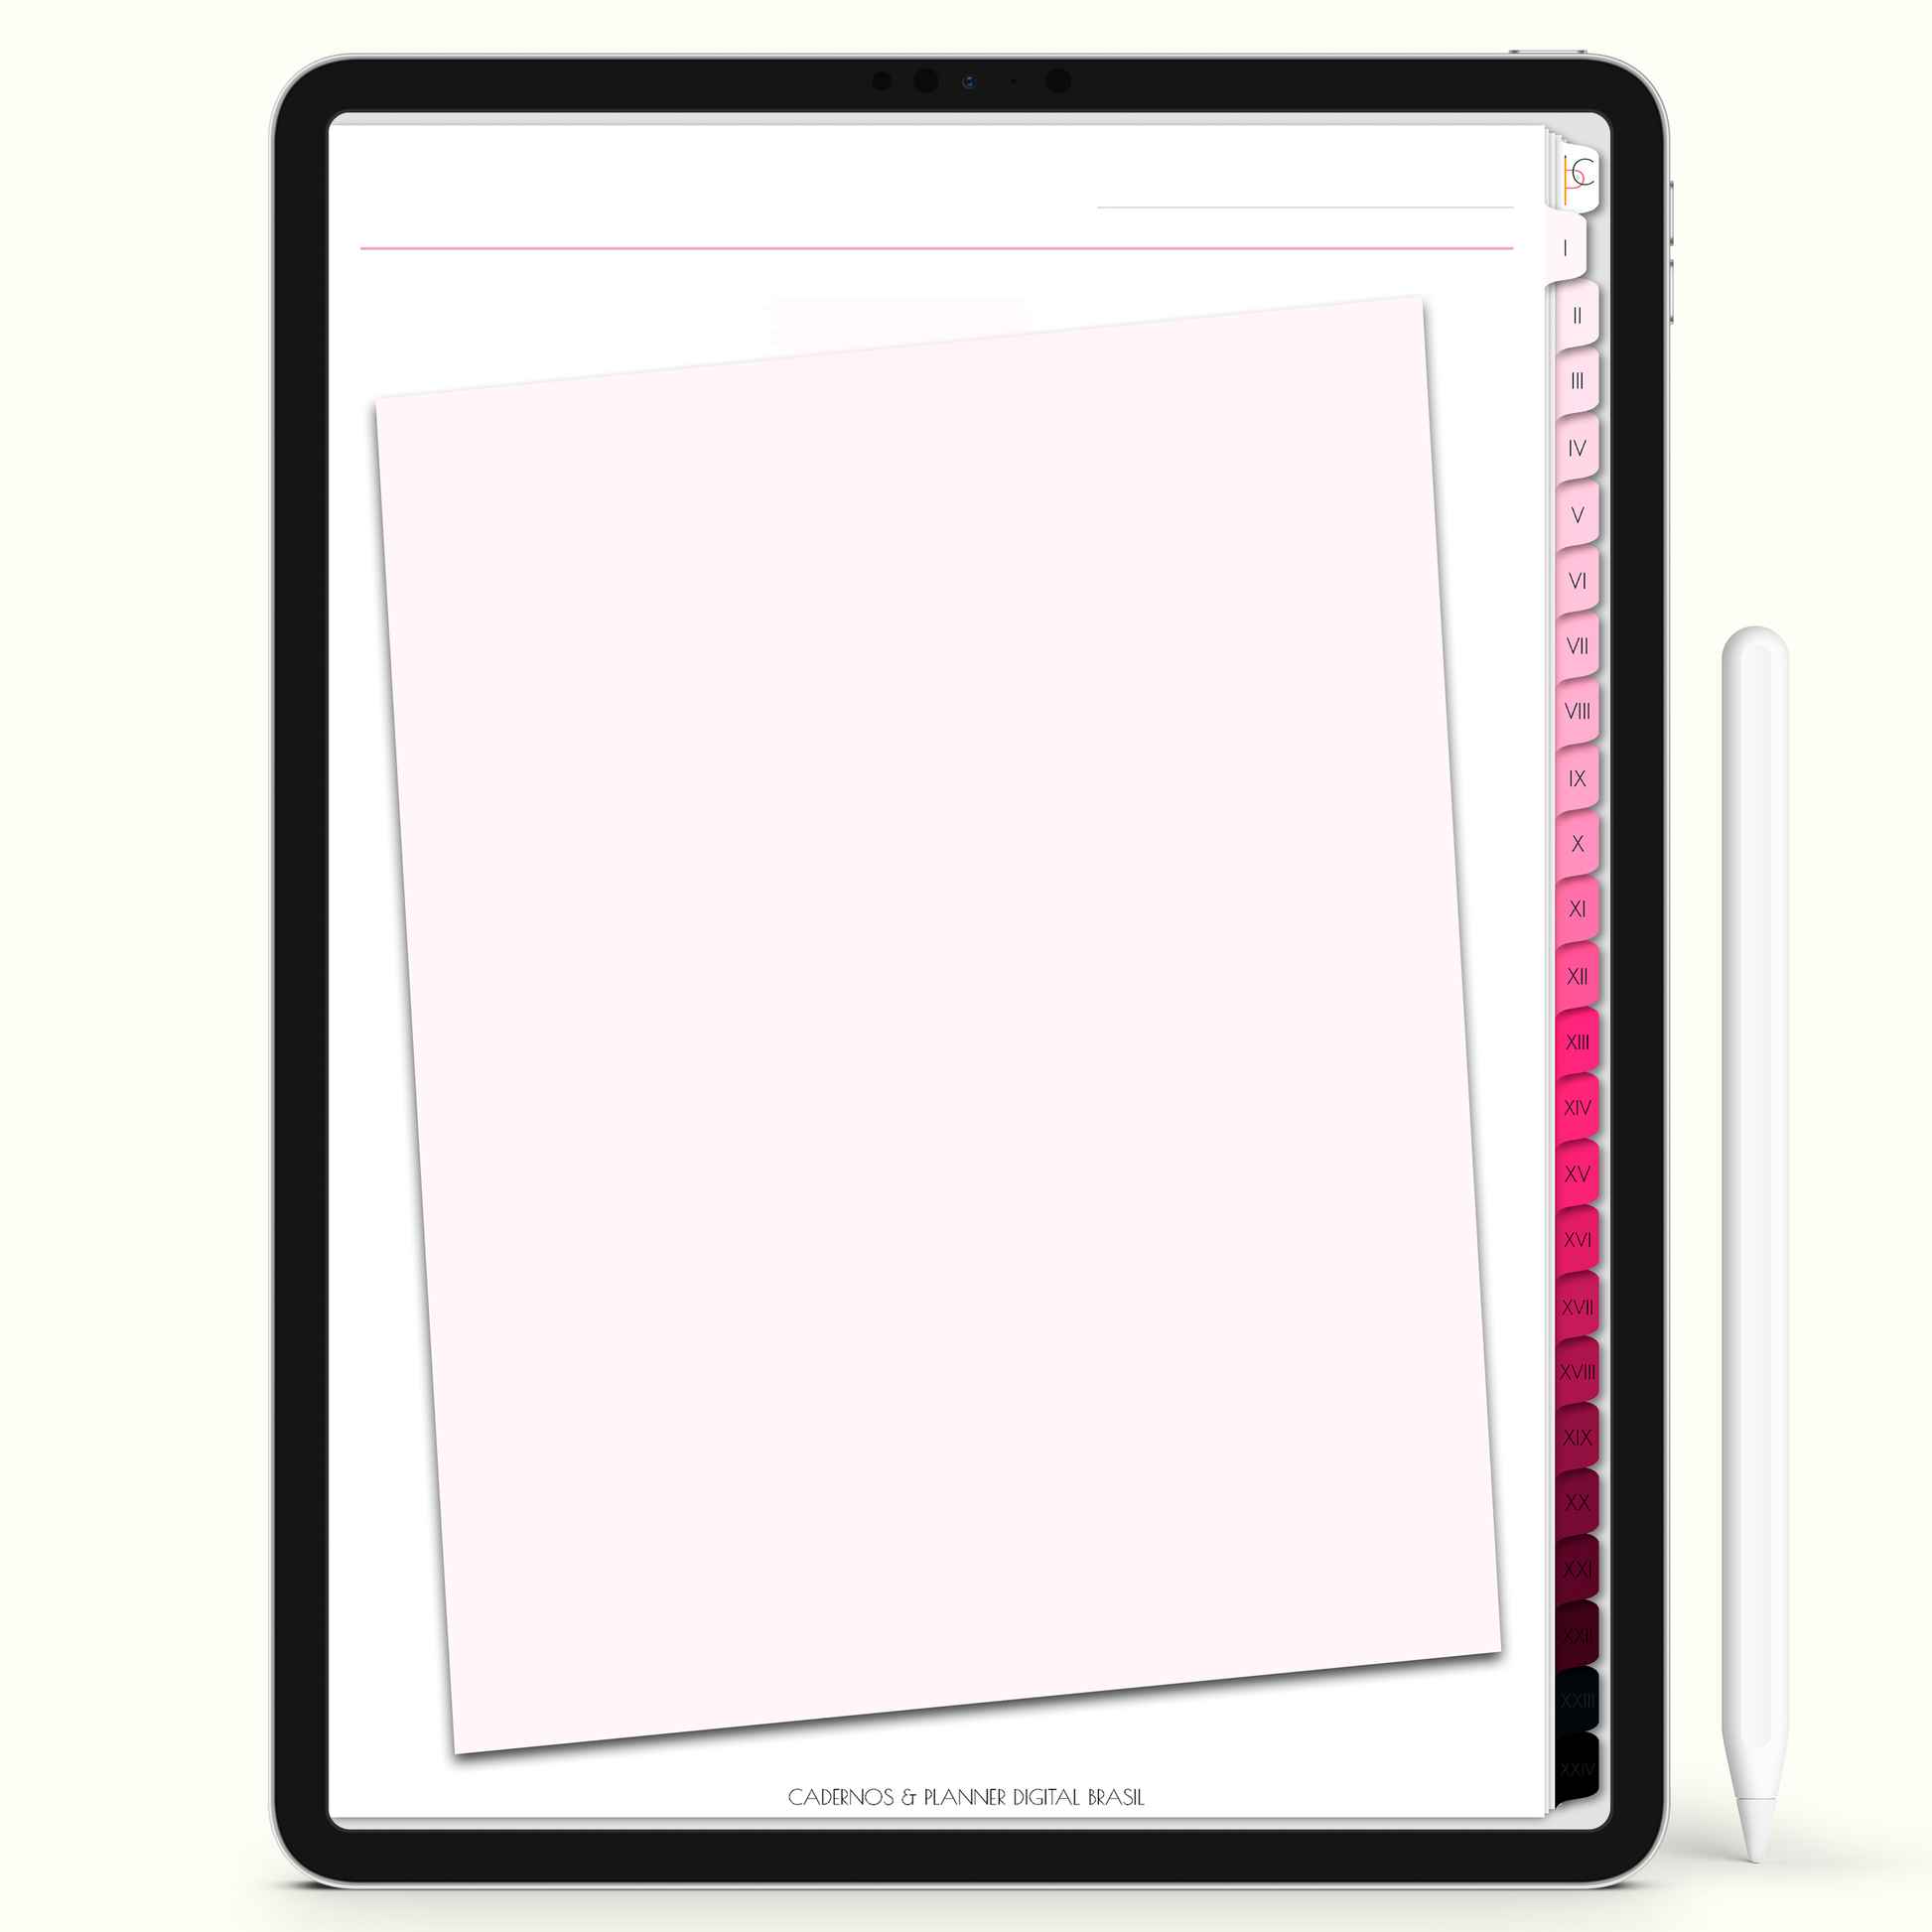 Caderno Digital Blush 24 Matérias - Quadro de Avisos do Caderno Digital para iPad e Tablet Android. Cadernos & Planner Digital Brasil